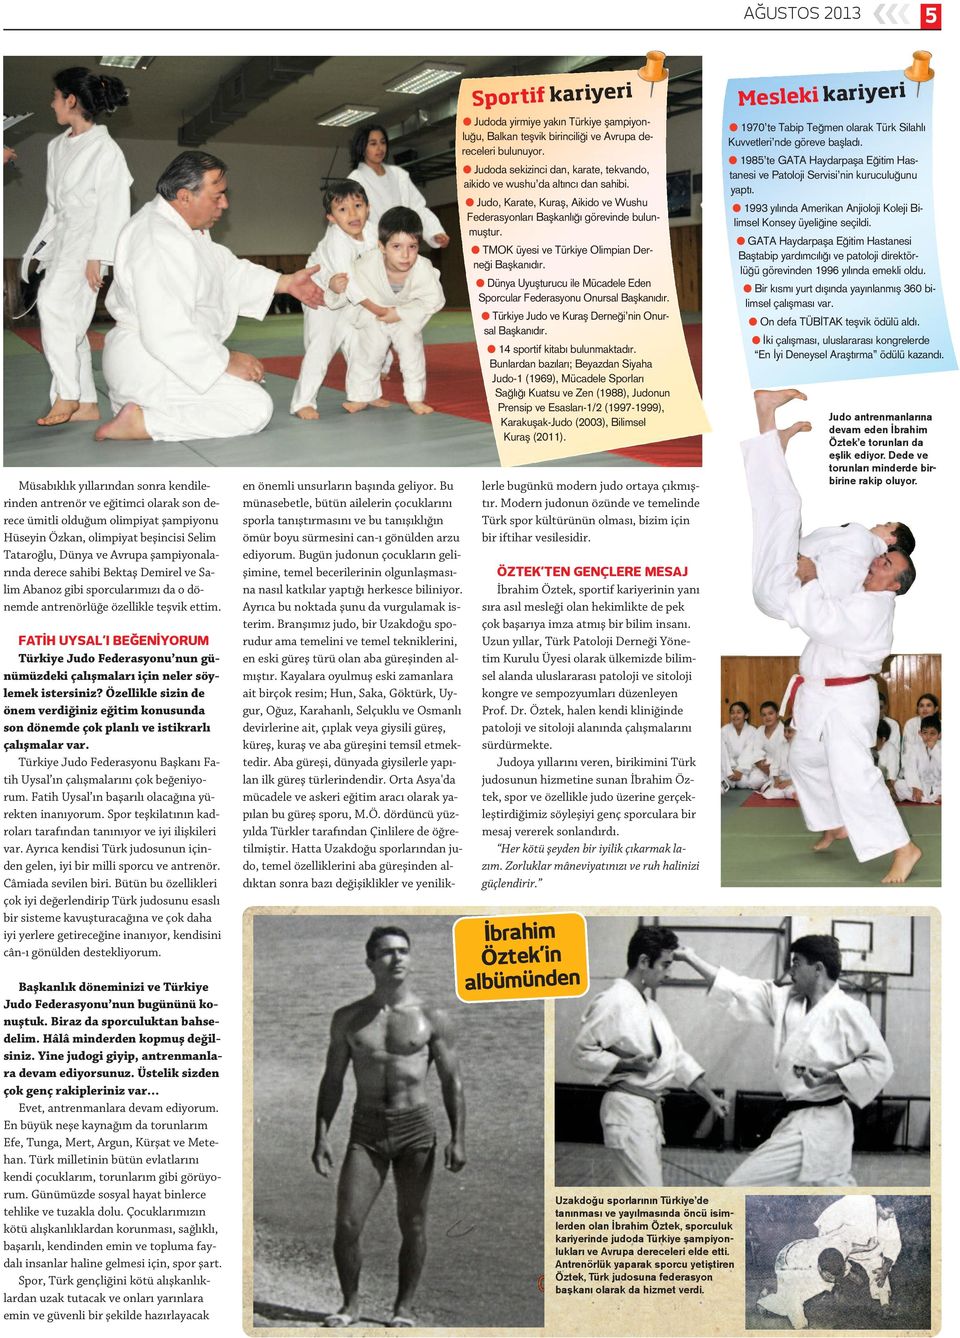 FATİH UYSAL I BEĞENİYORUM Türkiye Judo Federasyonu nun günümüzdeki çalışmaları için neler söylemek istersiniz?